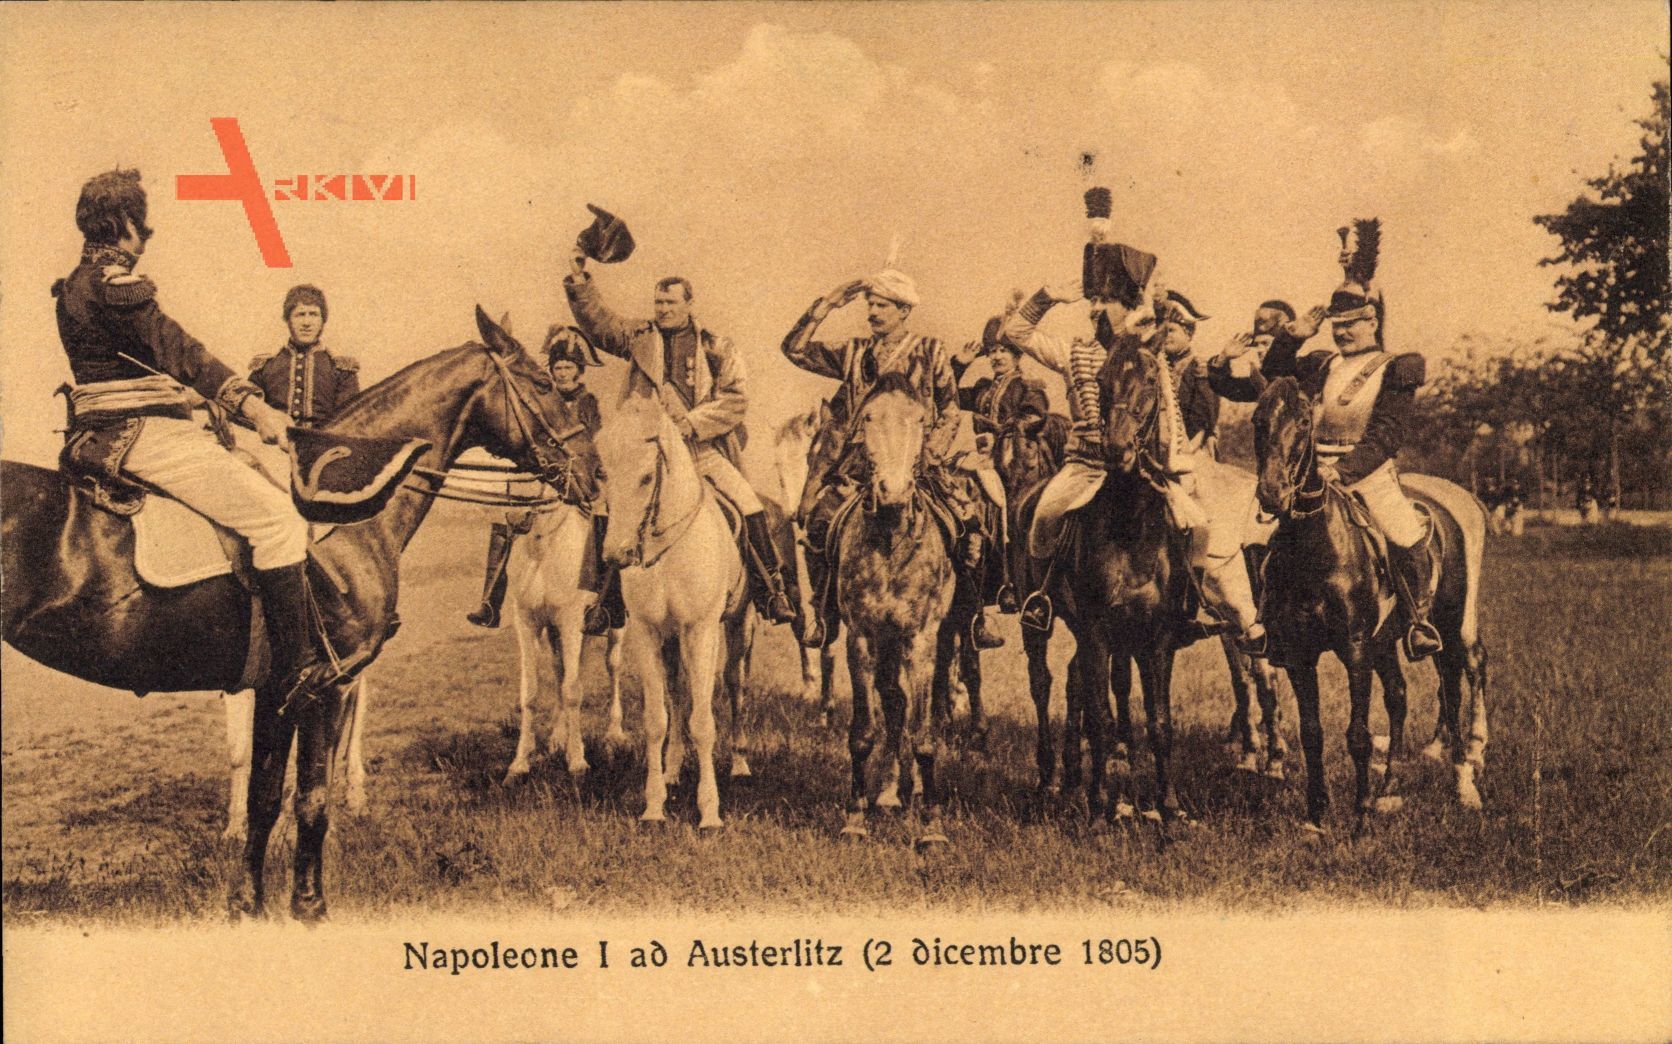 Napoleone I ad Austerlitz, 2 dicembre 1805, Napoleon Bonaparte